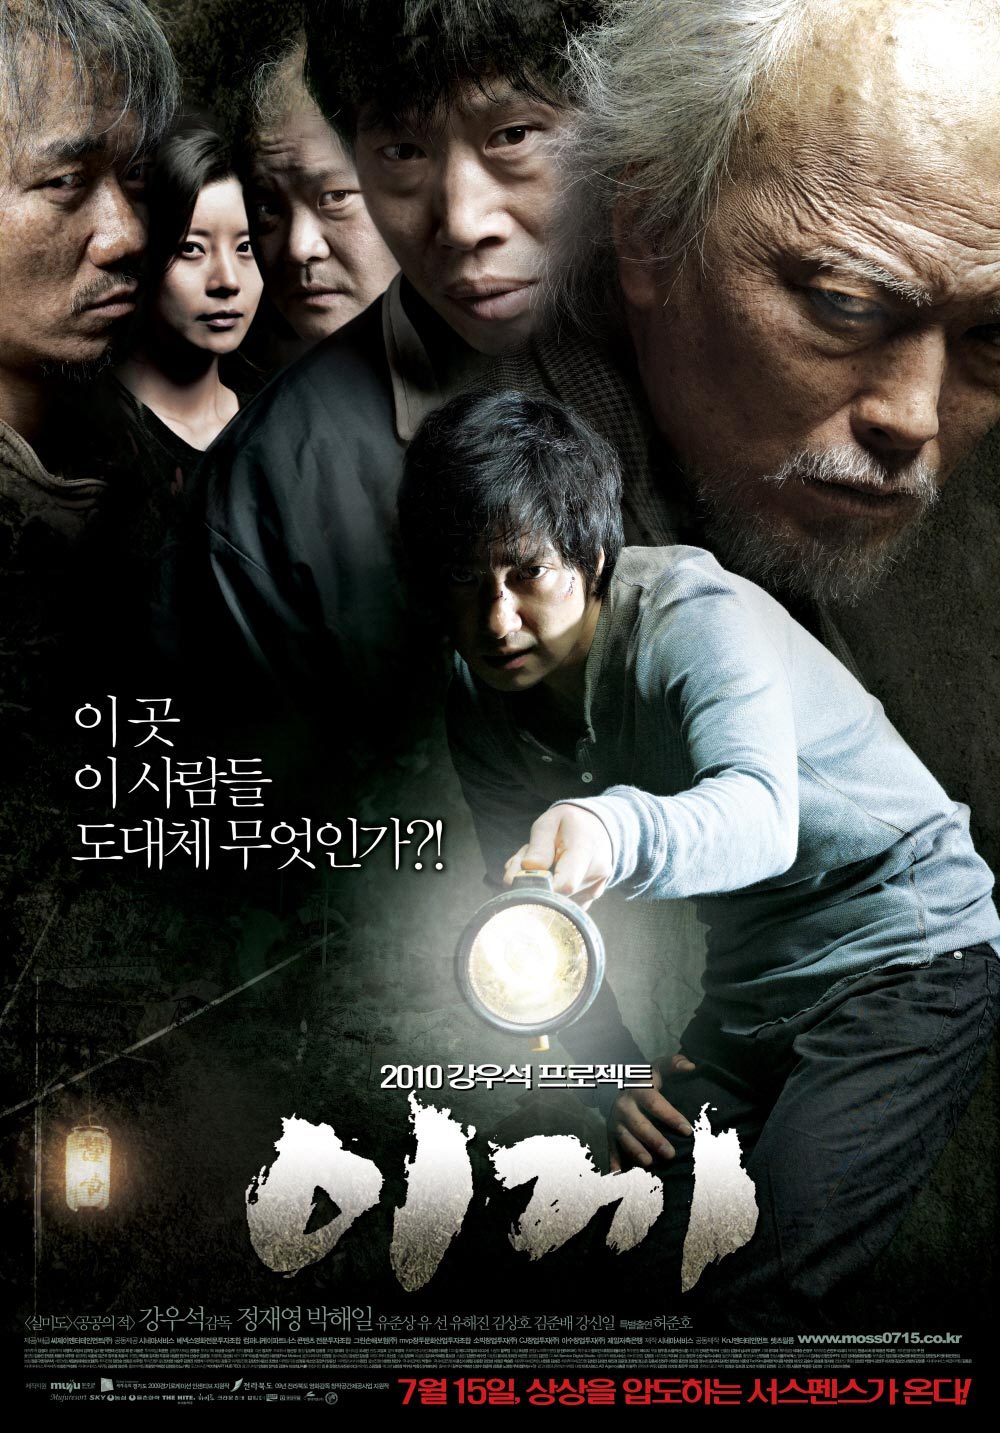 harper bazaar phim cua yoo hae jin 3 - 13 phim cực hay làm nên tên tuổi của “ông chú xấu xí” Yoo Hae Jin